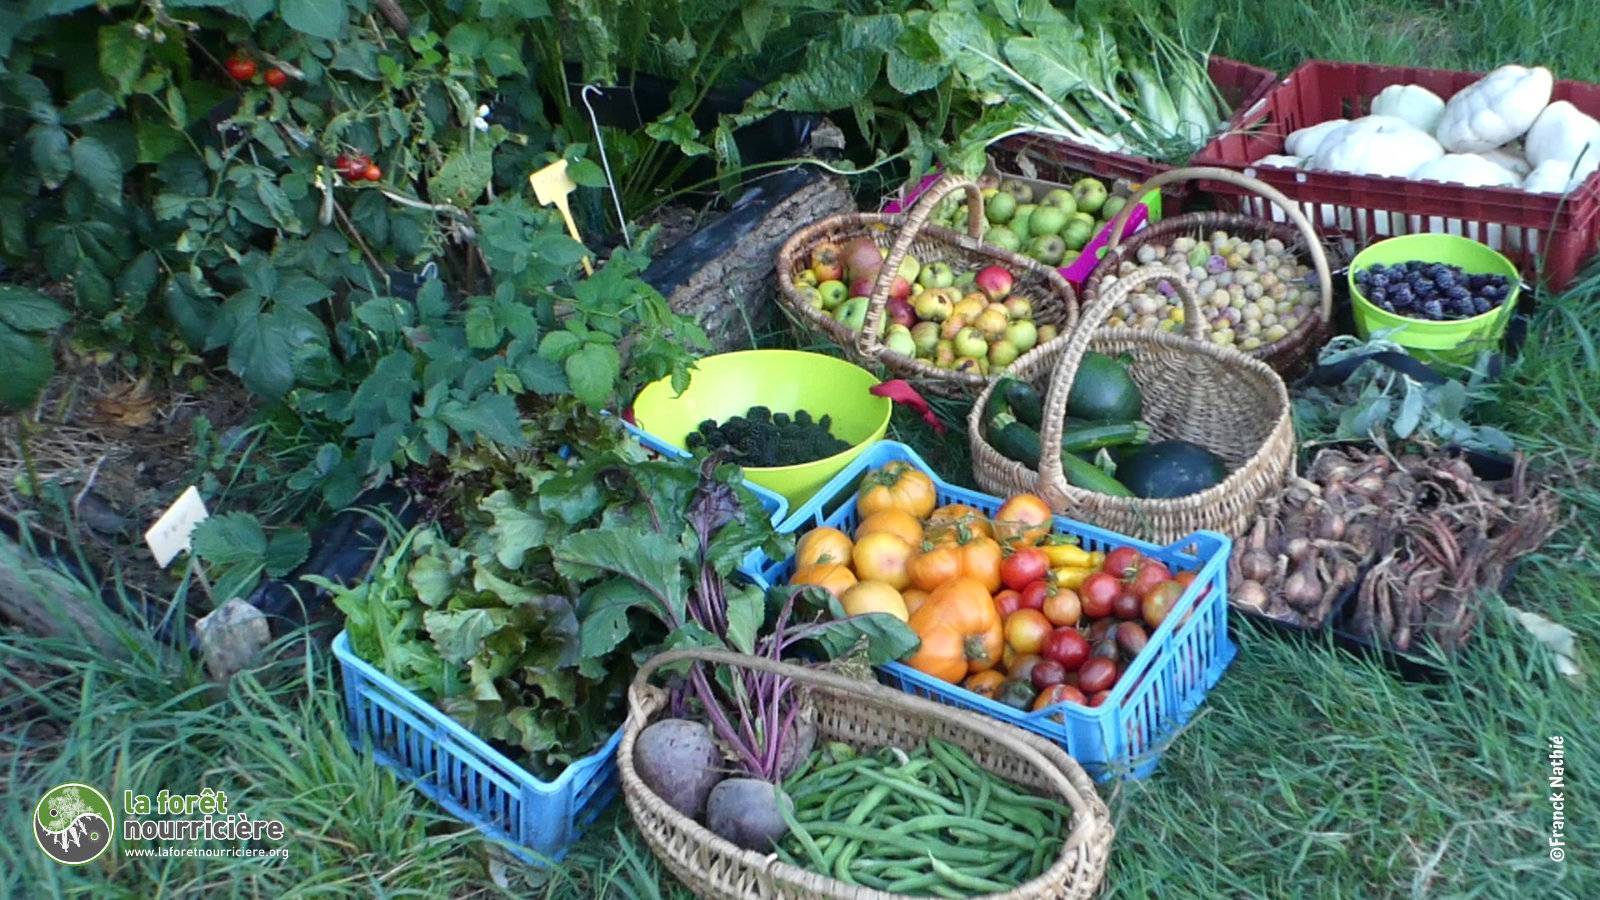 récolte de fruits et légumes au mois d'août : betteraves, haricots, tomates, mûres, courgettes, pommes, pâtissons